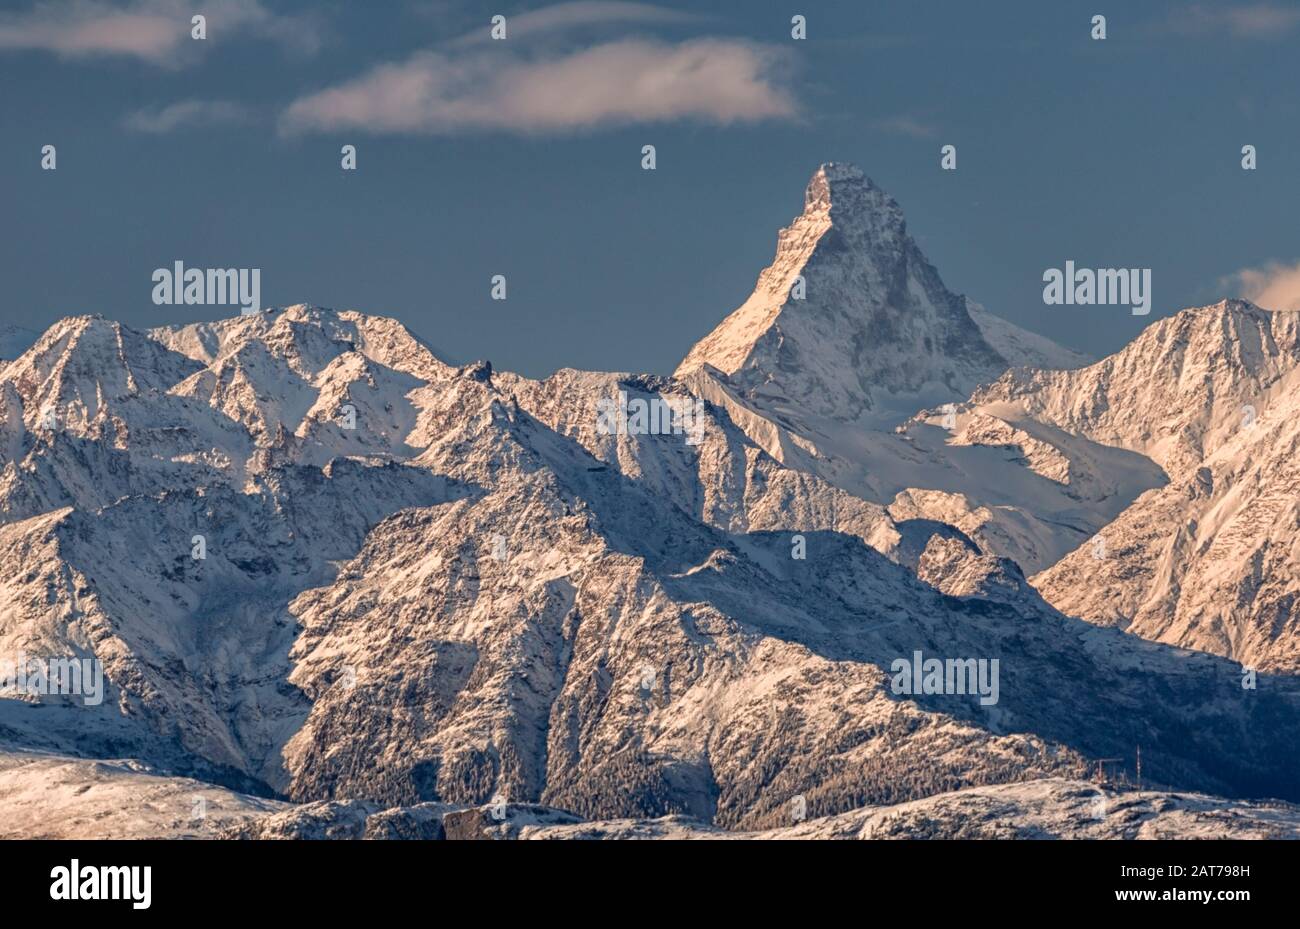 Walliser Alpen mit Matterhorn / Valais alps with matterhorn mountain Stock Photo